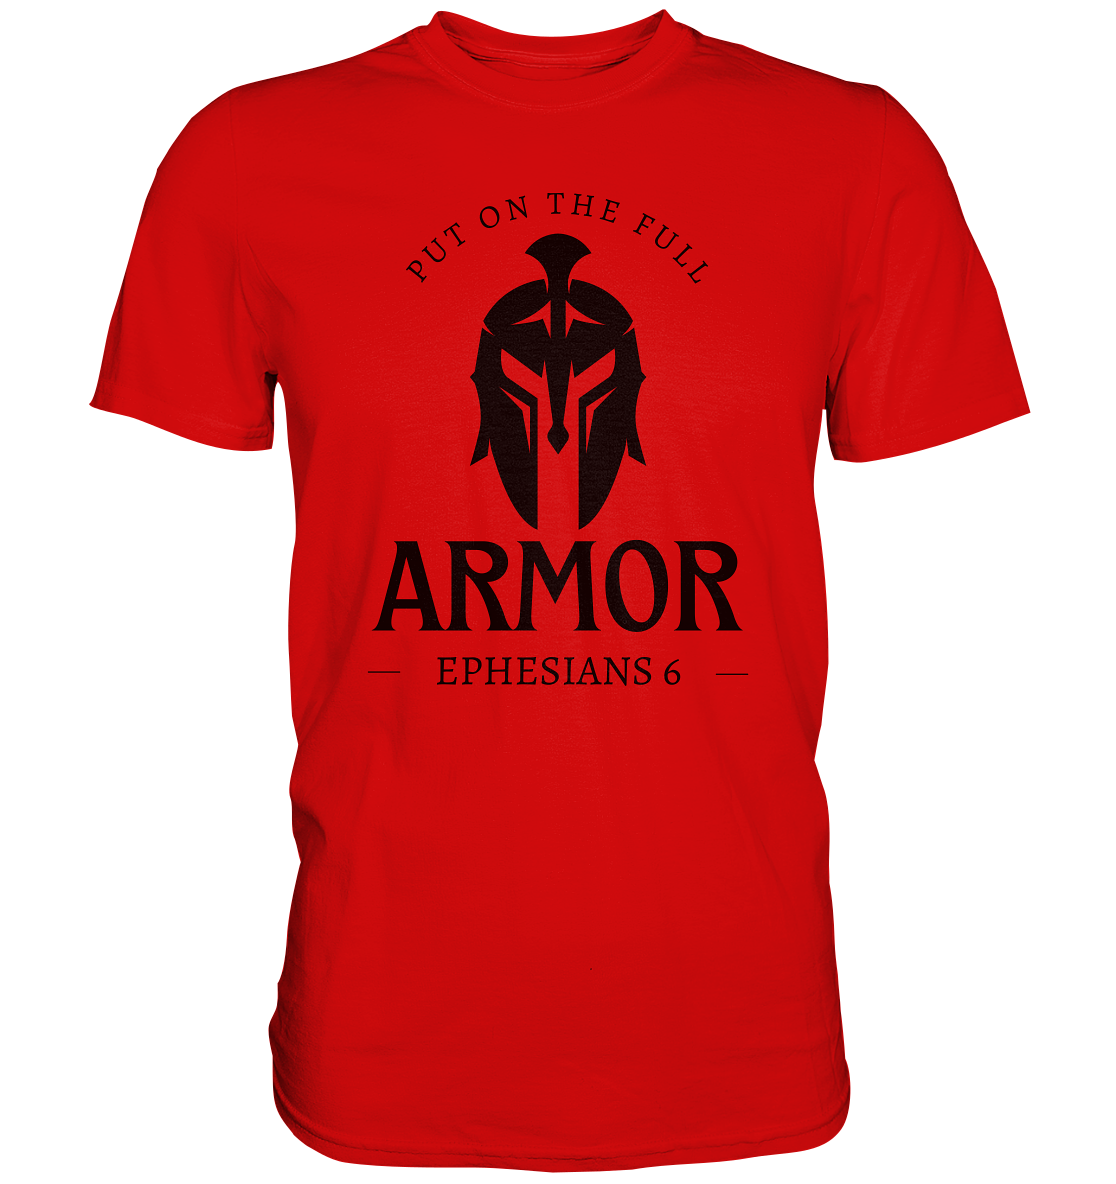 Put on the full armor - Gottes Rüstung für jeden Tag - Premium Shirt